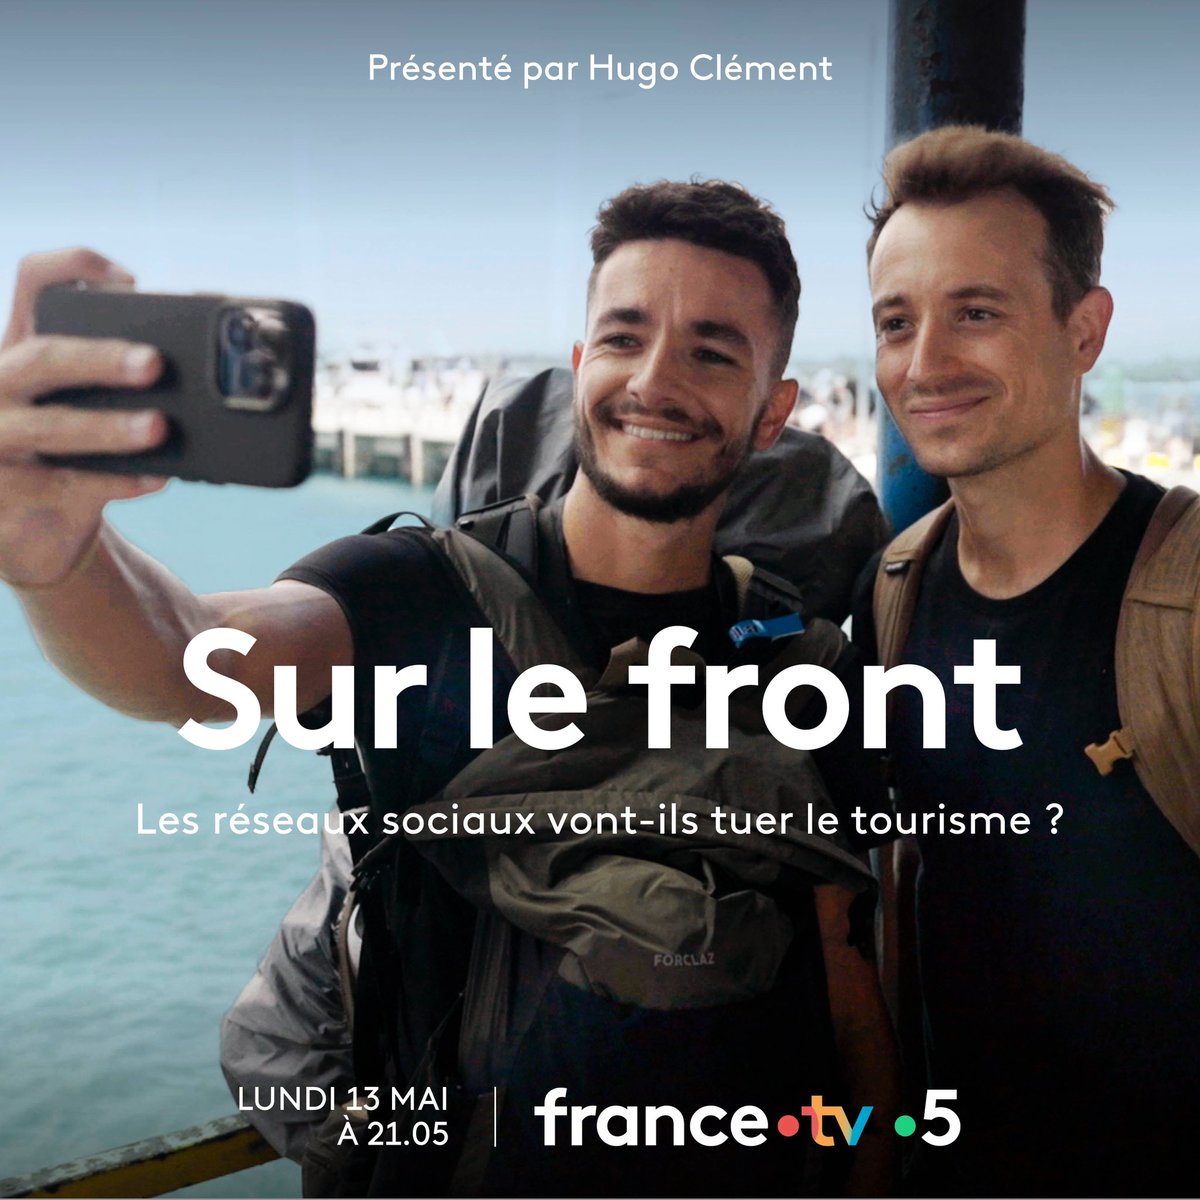 Les réseaux sociaux vont-ils tuer le tourisme ? Enquête dans #SurLeFront le lundi 13 mai à 21h sur France 5. Nous vous montrerons la face cachée du tourisme mais aussi les solutions qui existent pour protéger notre merveilleux pays et ses sites naturels exceptionnels.